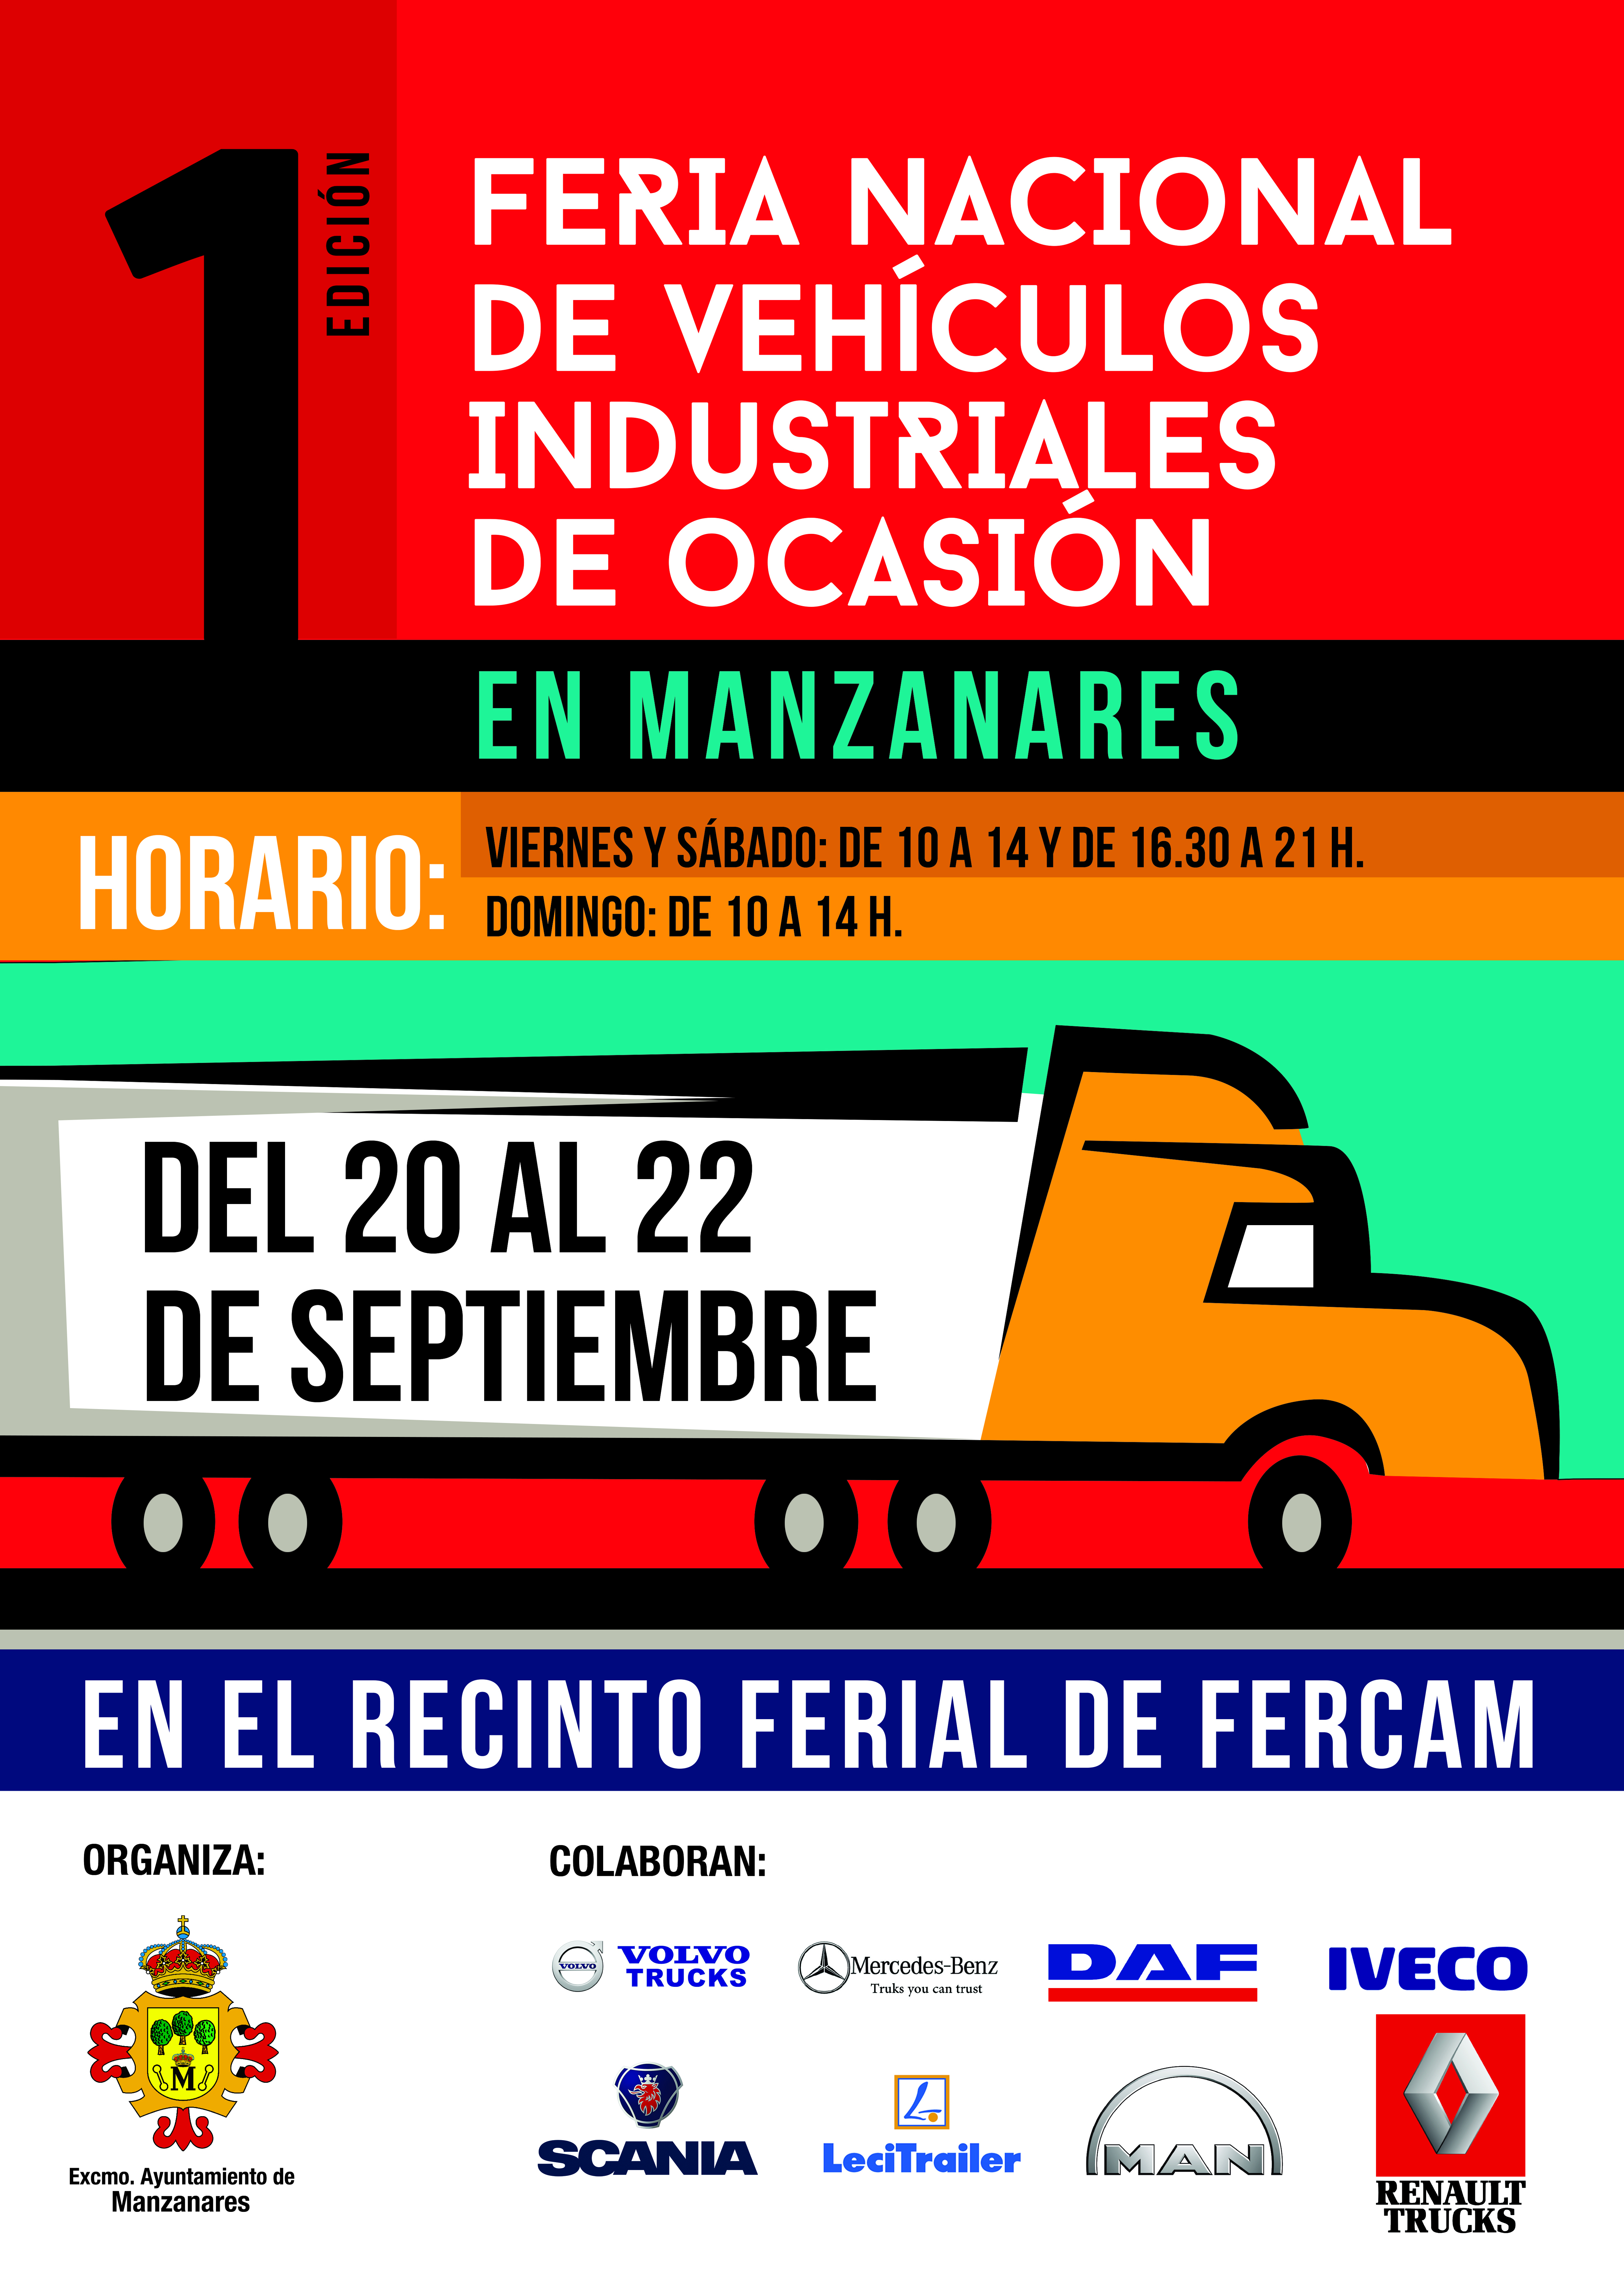 La I Feria Nacional de Vehículos Industriales de Ocasión en Manzanares ya tiene fecha